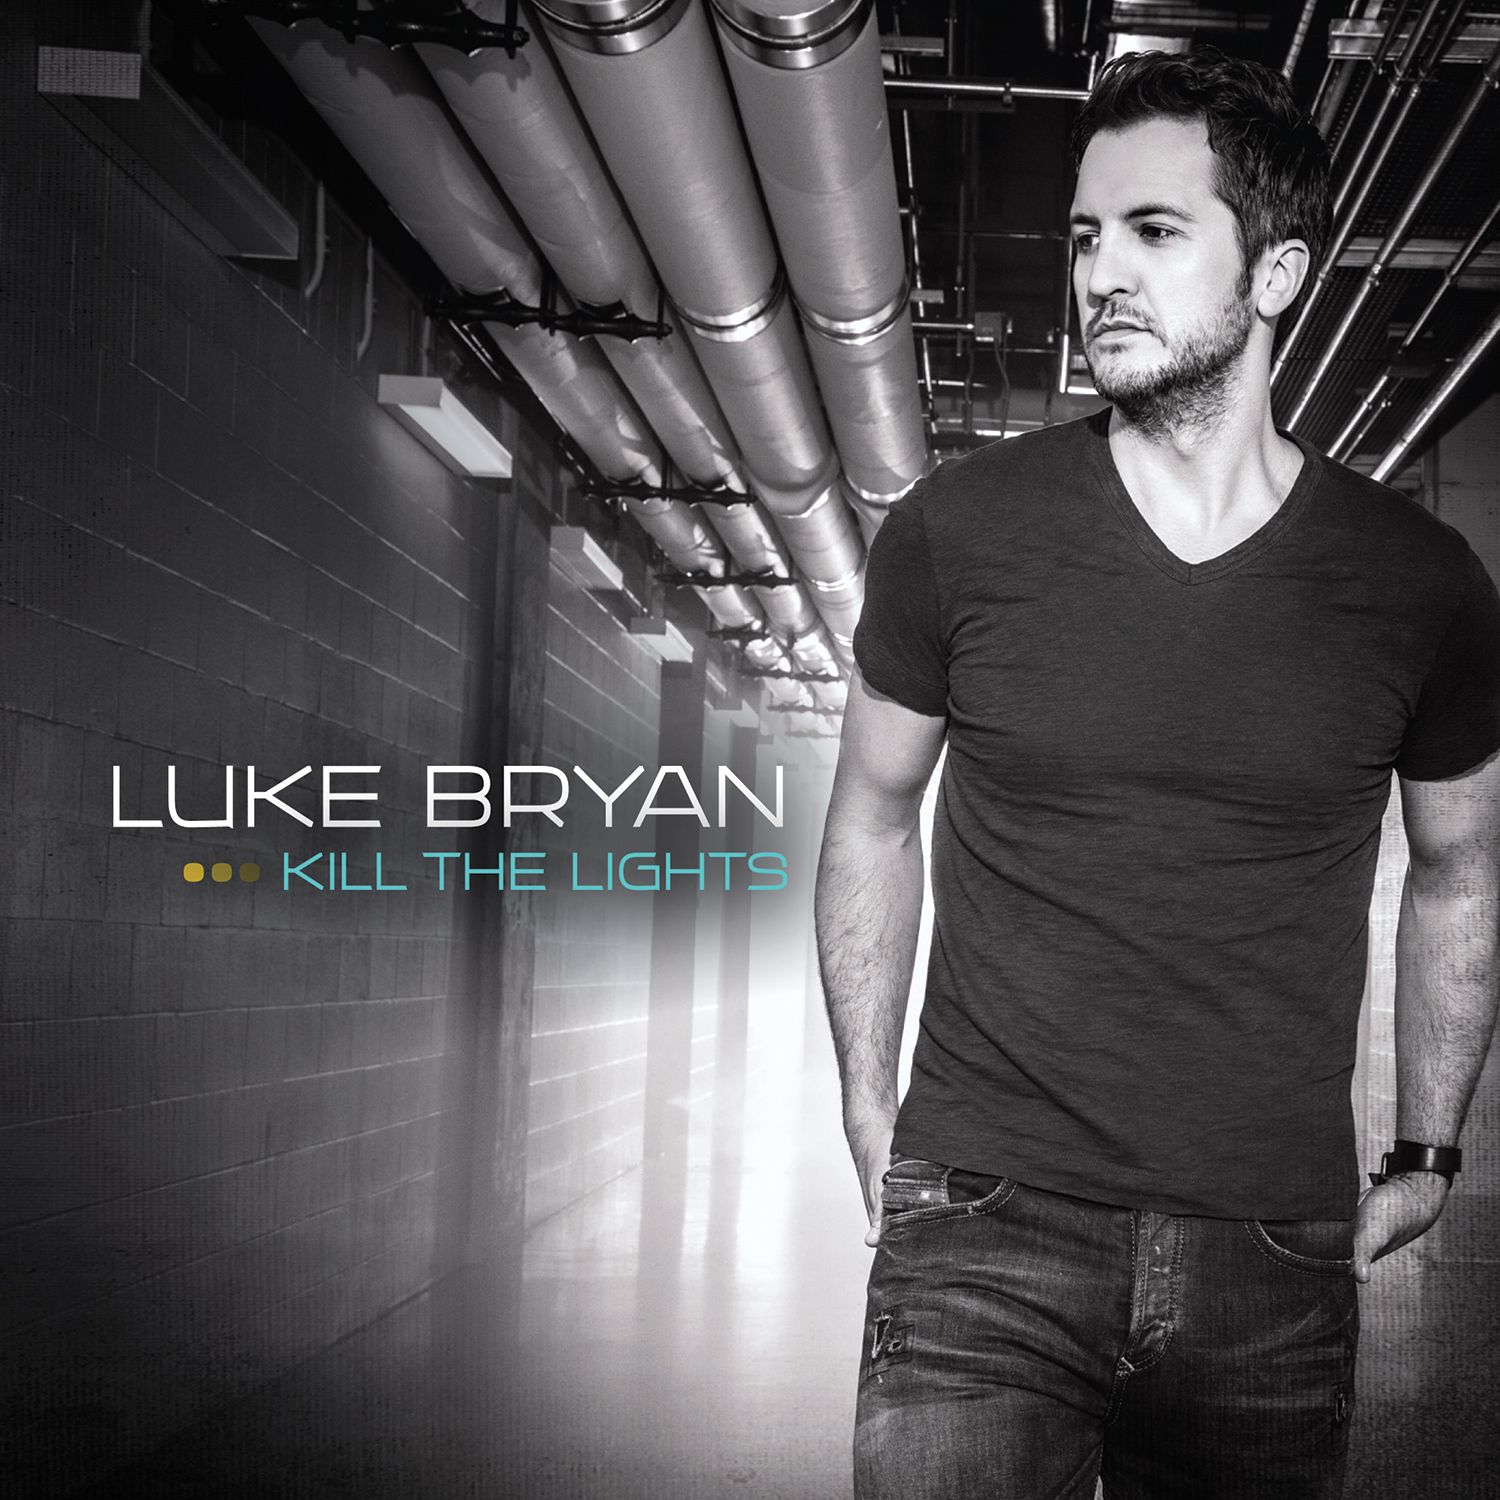 DETAILS REVEALED FOR LUKE BRYAN’S UPCOMING ALBUM “KILL THE LIGHTS”